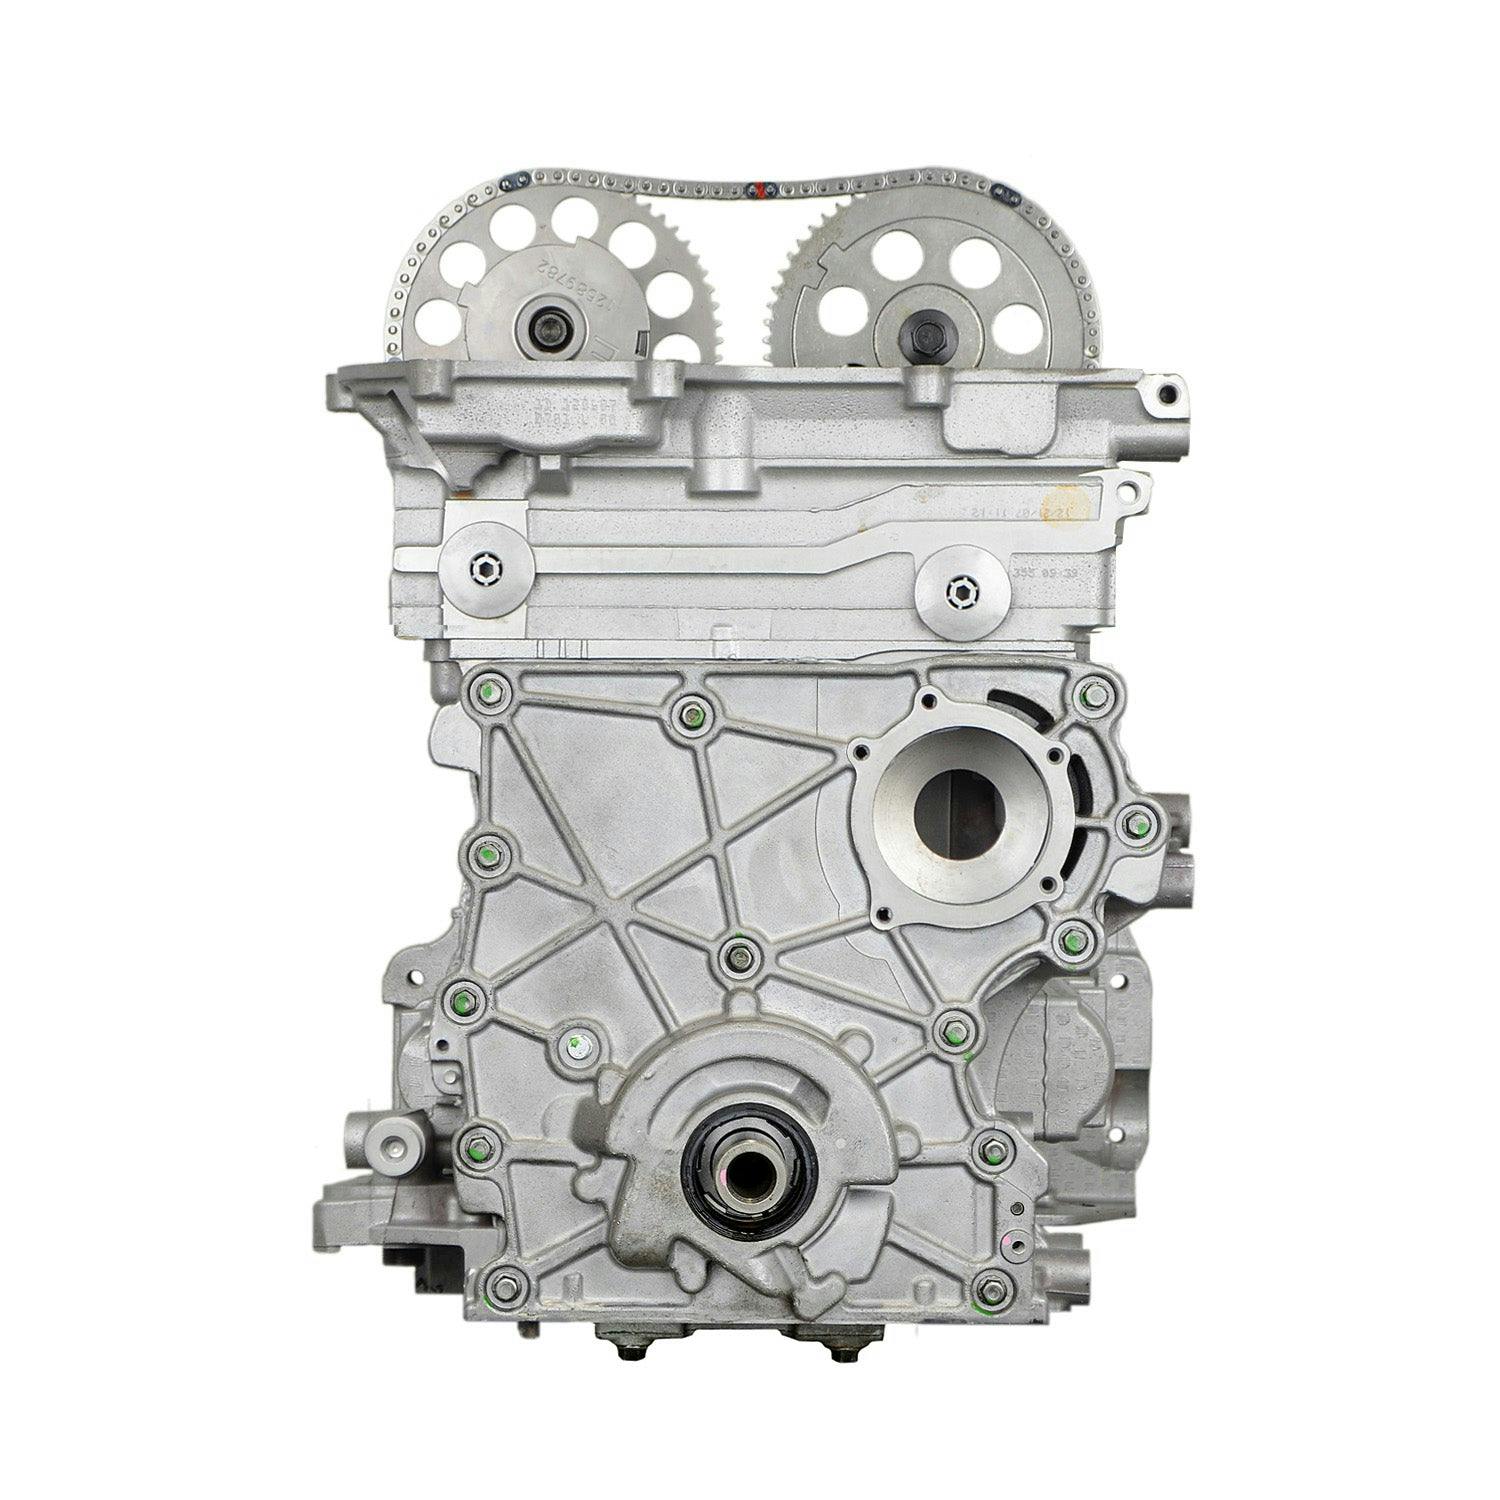 5.7L V8 Engine for 1996-1997 Chevrolet Camaro/Pontiac Firebird